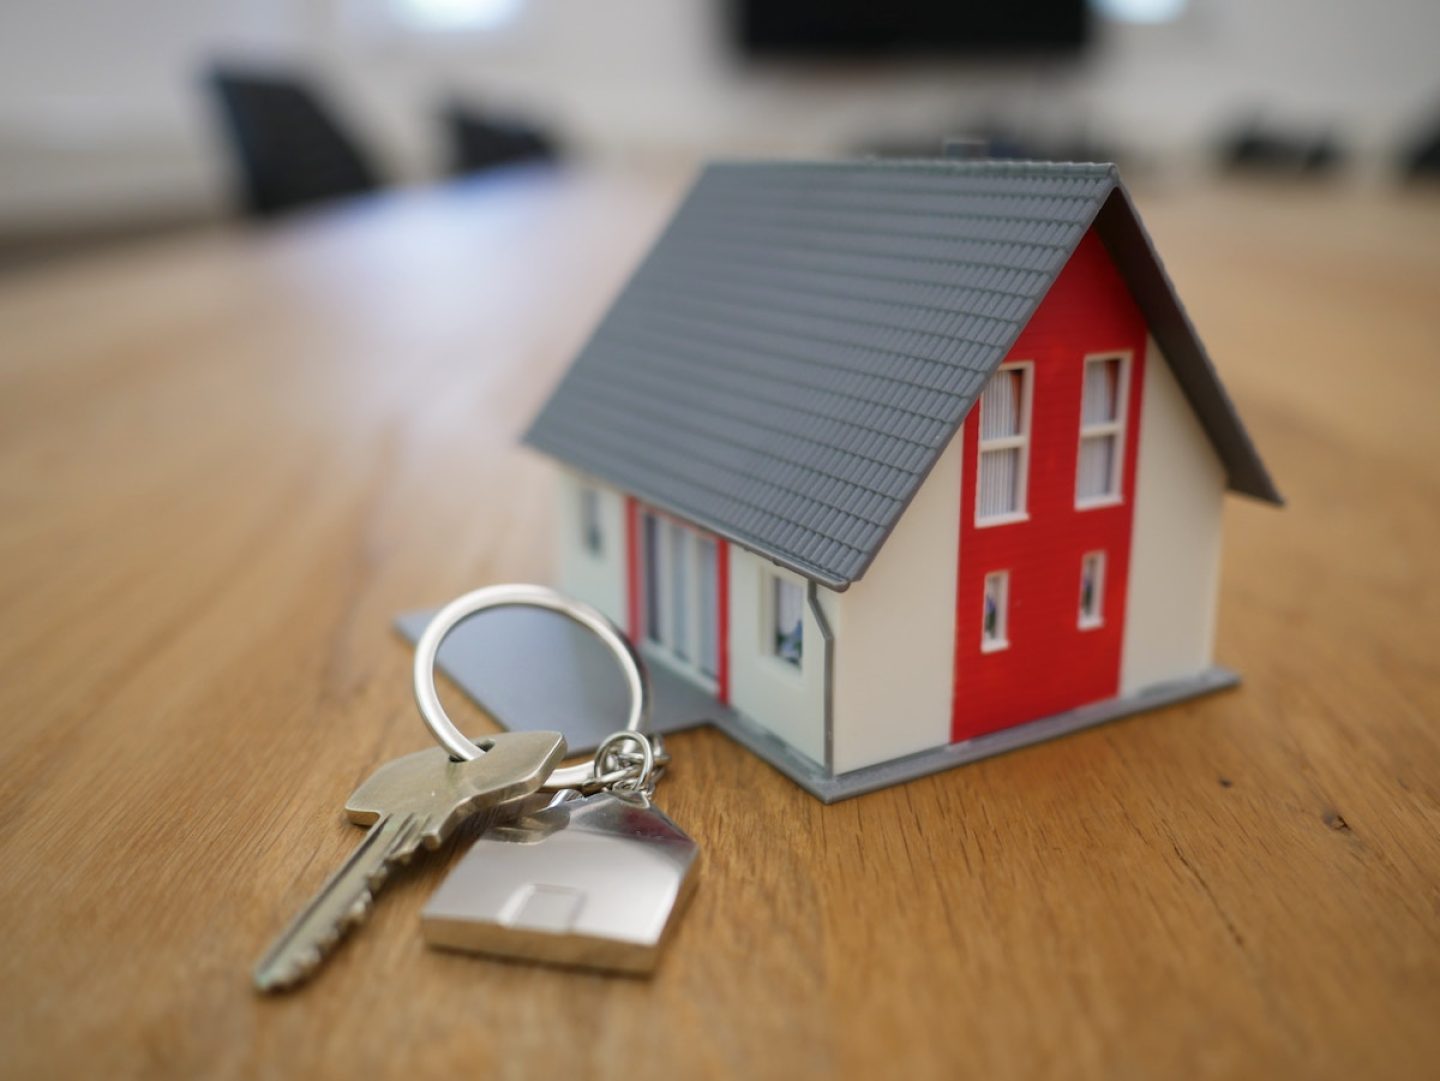 Geheimtipps für die Wohnungssuche – Studie zeigt, was Vermieterinnen und Vermieter wollen